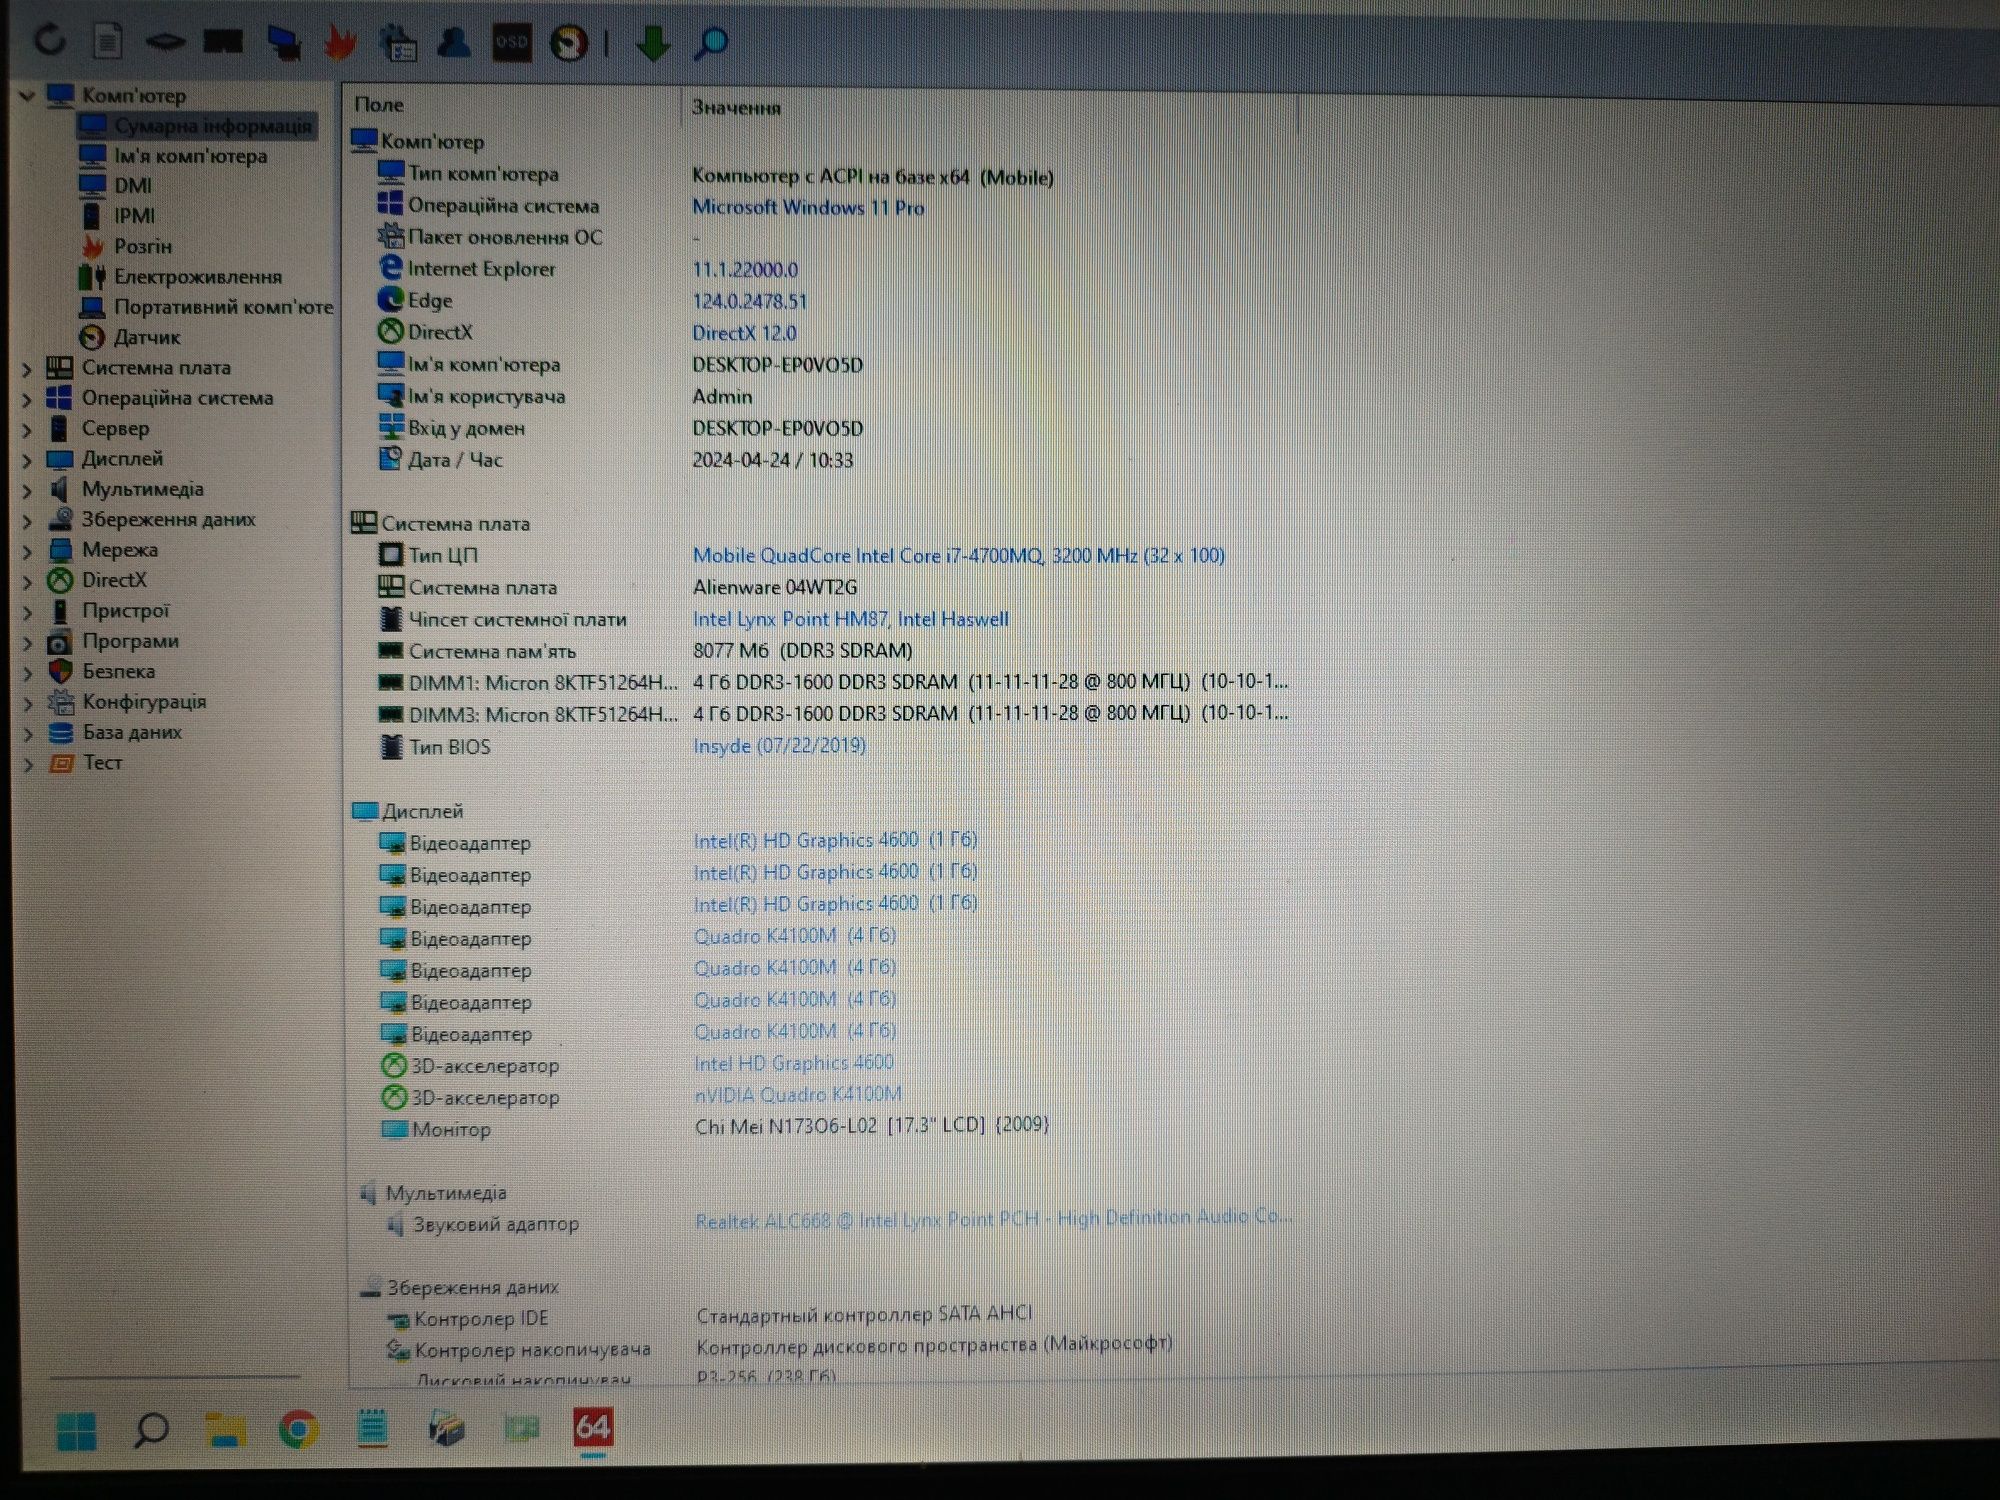 Alienware 17 4K/Nvidia k4100m 4gb/ssd 240/8 gb Озу/i7-4700mq 3,2 ghz